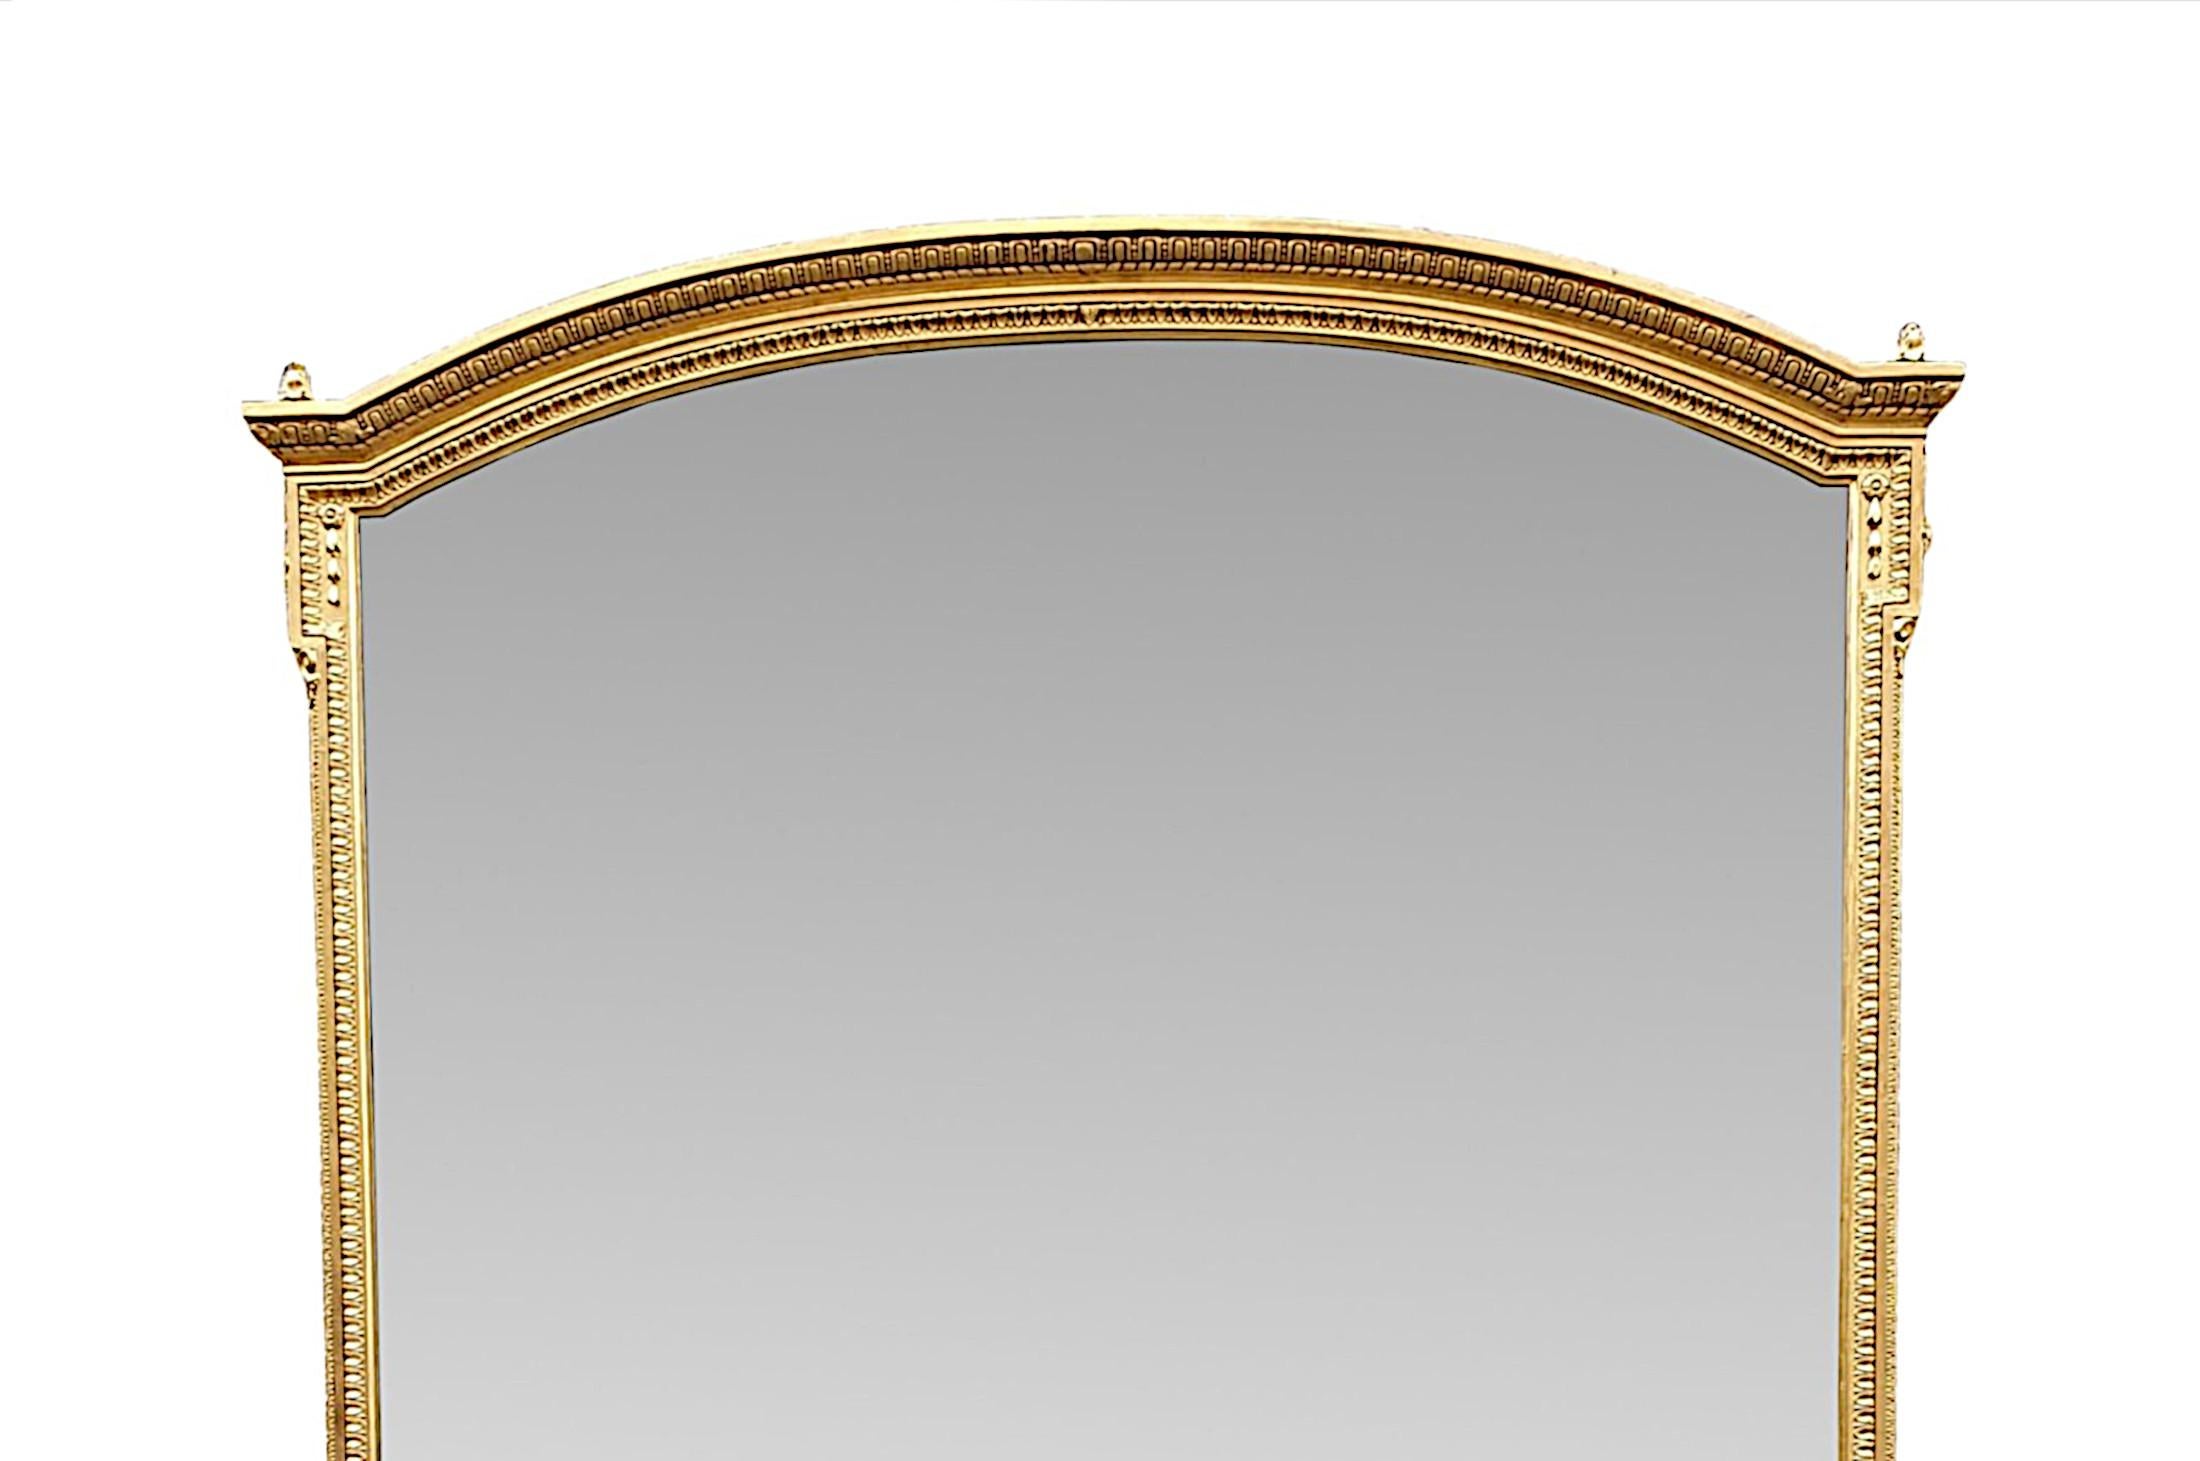 Un très beau et rare miroir surmonté d'un manteau du 19ème siècle de grandes proportions. La plaque de miroir en verre de forme rectangulaire se trouve dans un étonnant cadre en bois doré moulé et sculpté à la main, avec des motifs décoratifs